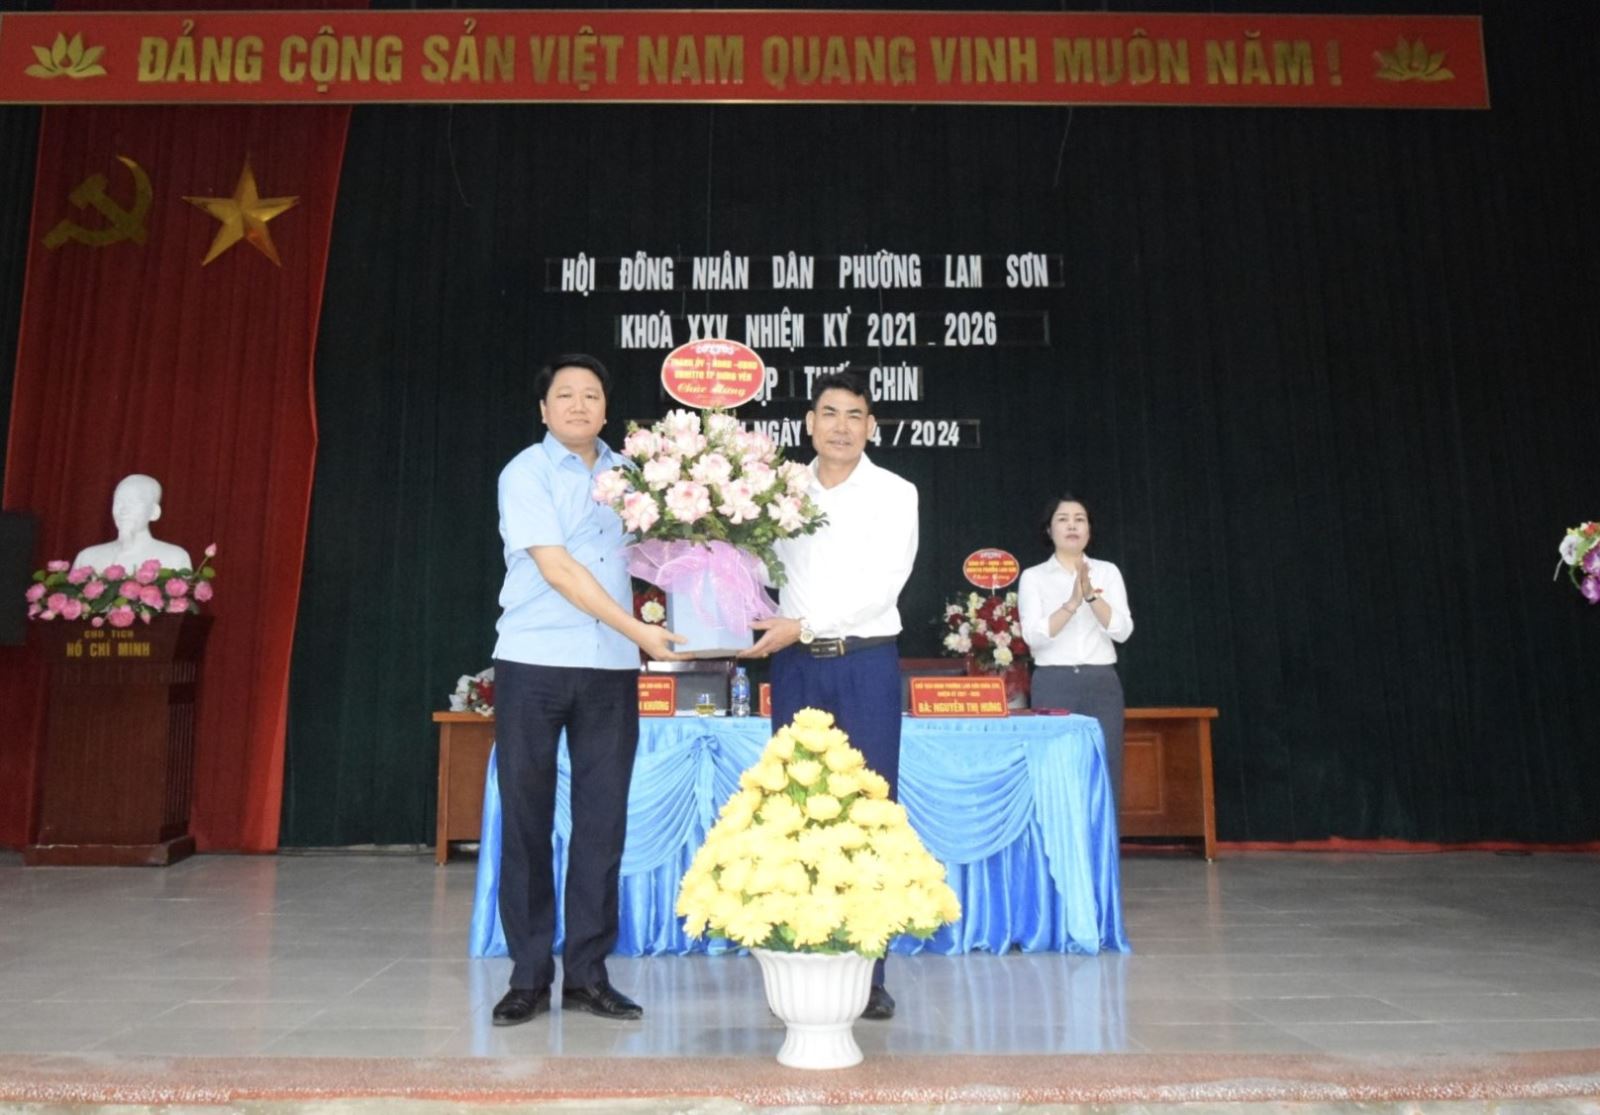 Hội đồng Nhân dân phường Lam Sơn  tổ chức kỳ họp lần thứ IX khóa XXV, nhiệm kỳ 2021-2026